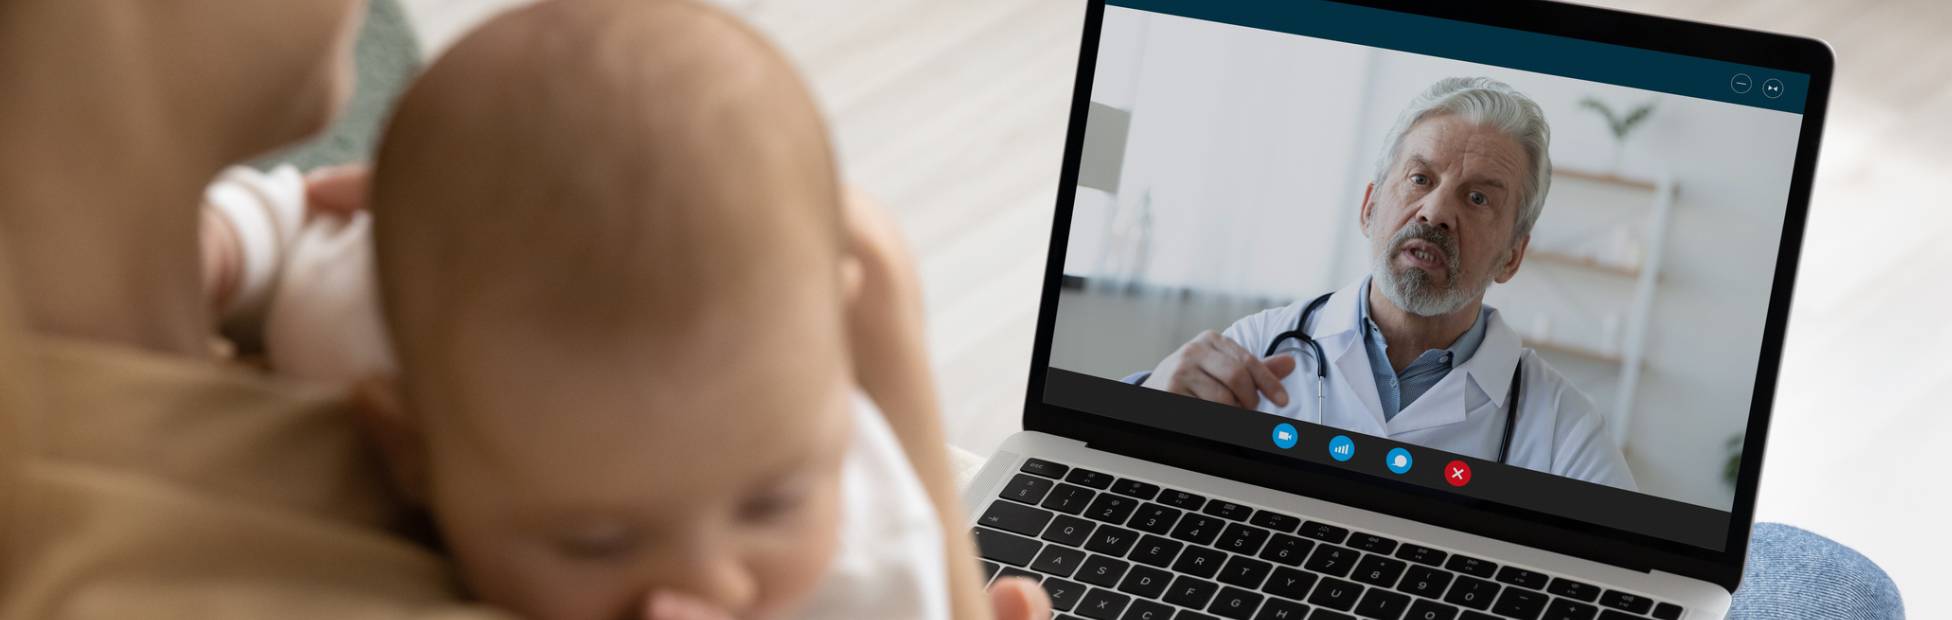 L'image montre une mère tenant son bébé et utilisant un ordinateur portable pour faire un appel vidéo avec un pédiatre.